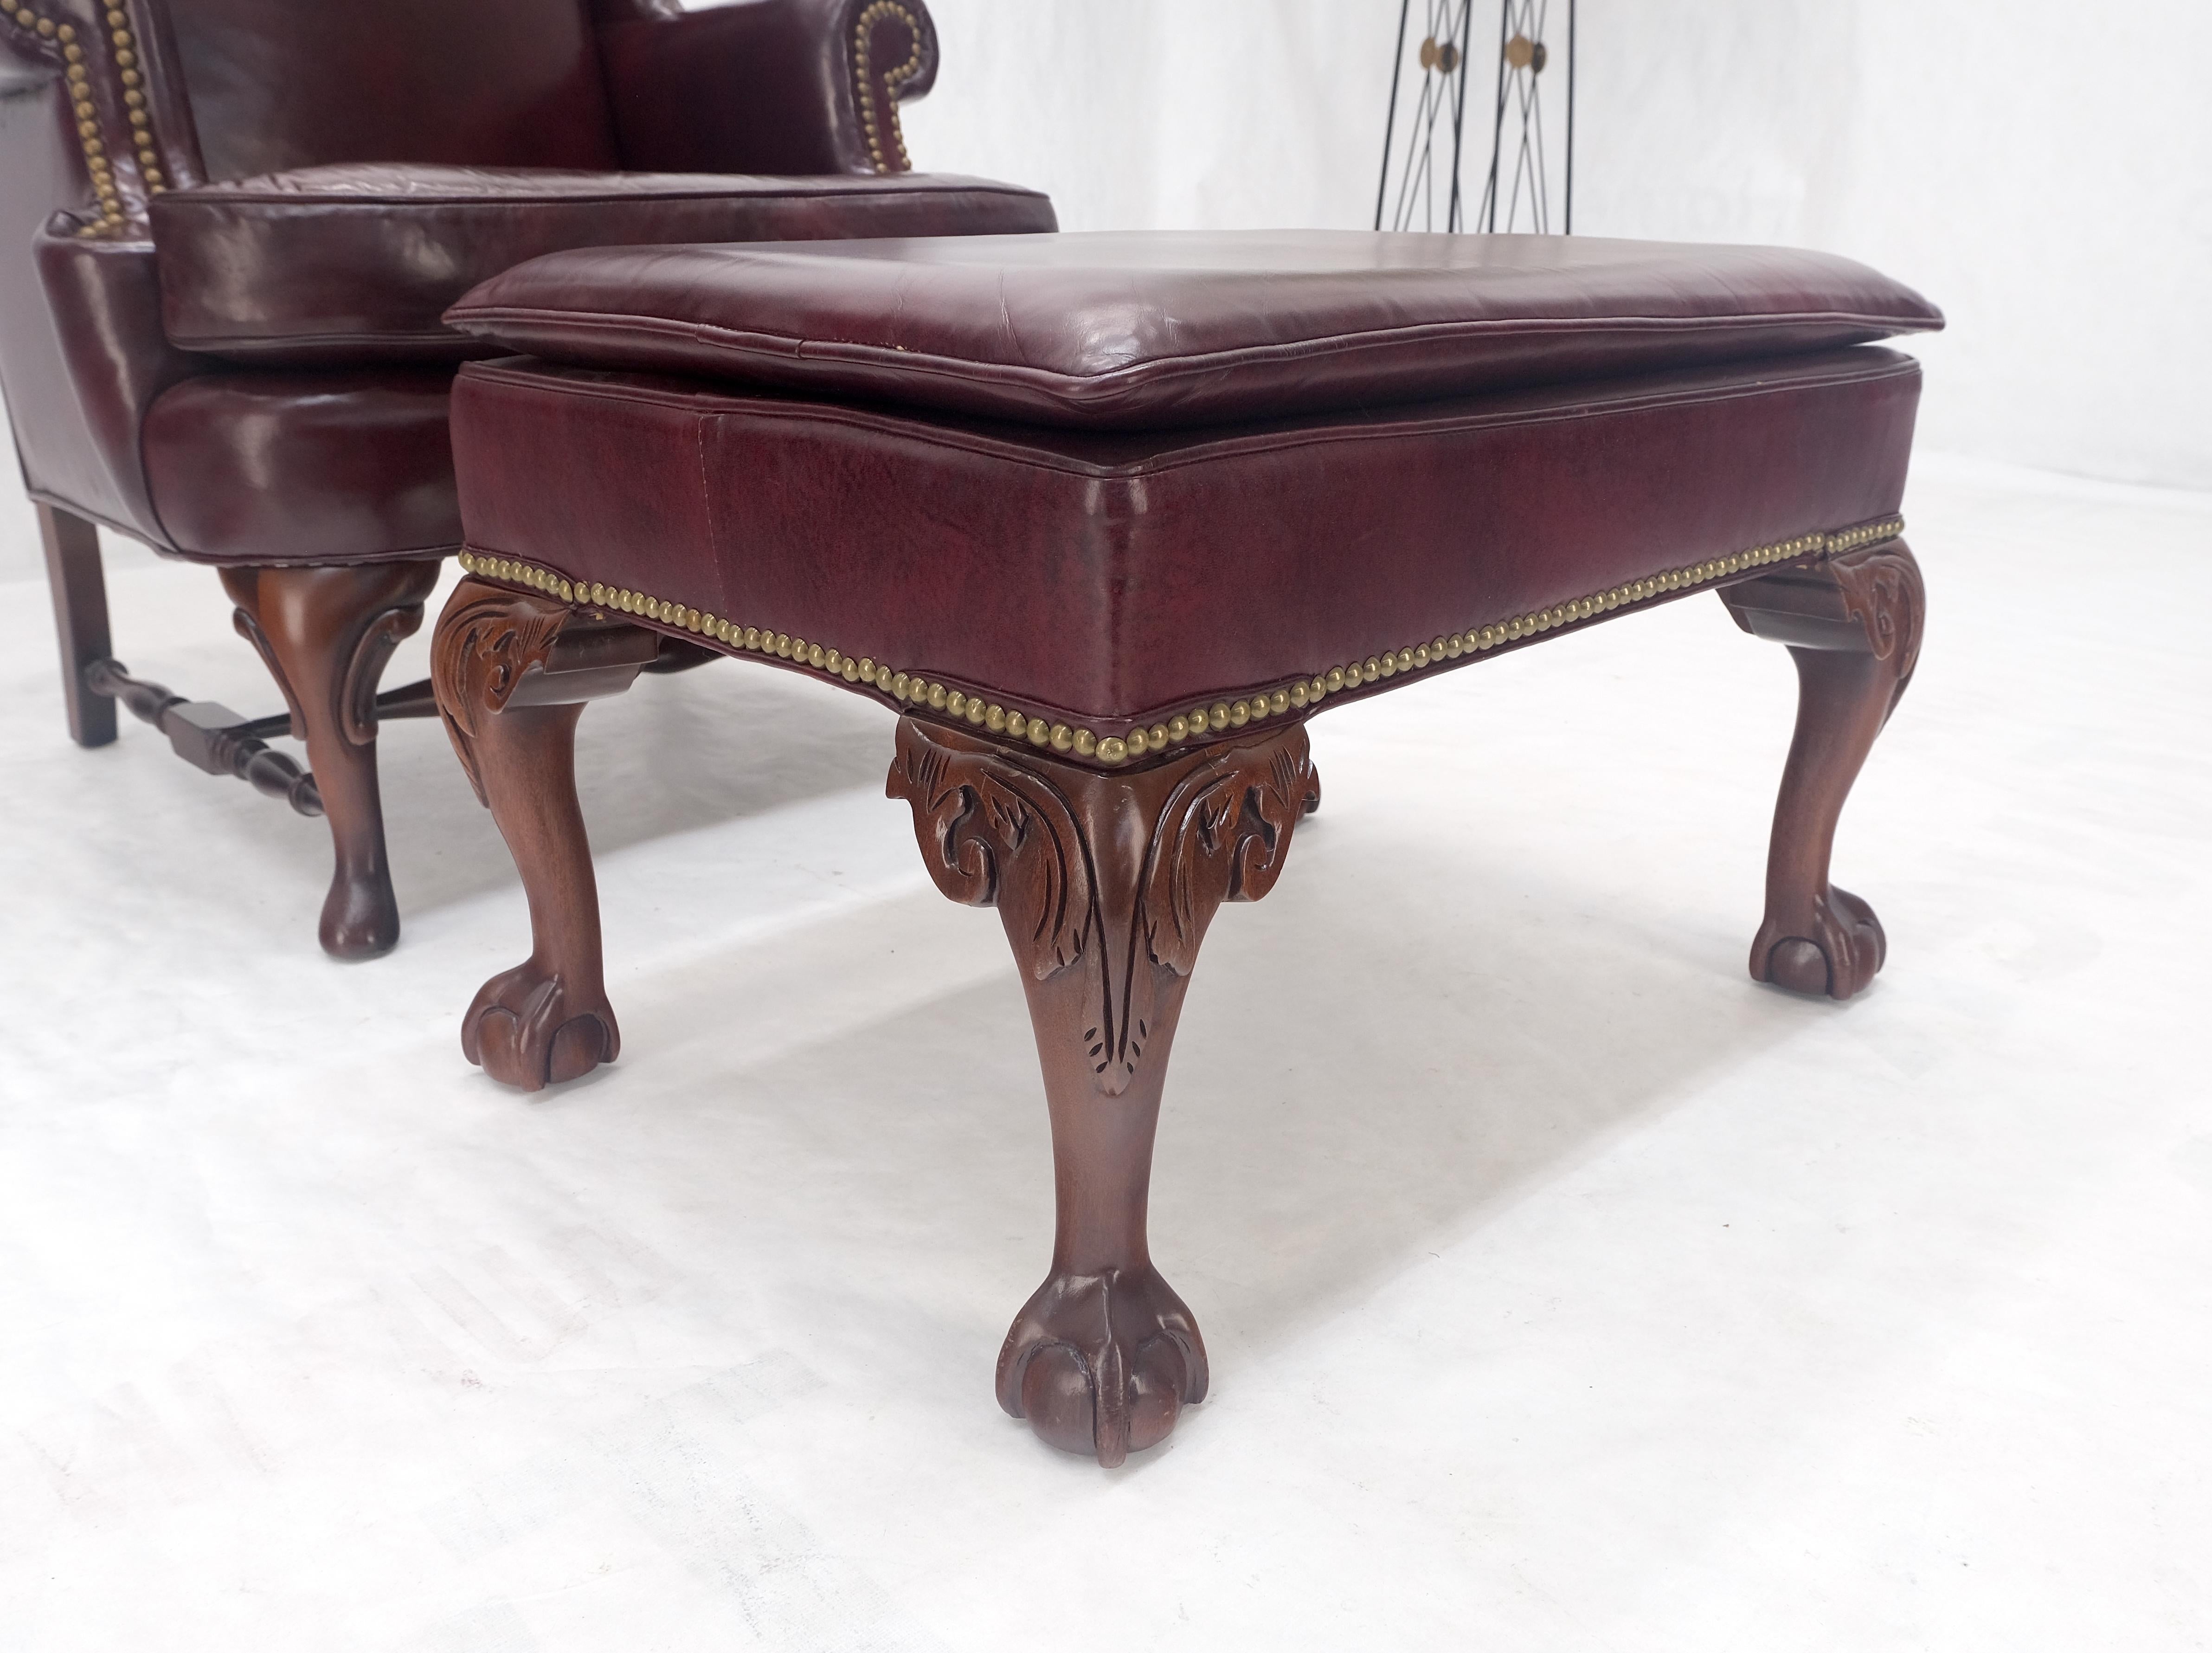 Kindel Burgundy Leather Upholstery Carved Mahogany Legs Wingback Chair & Ottoman
Chaise : 26 x 30 x 42, hauteur du siège : 18 
Ottoman :  19 x 26 x 17.
